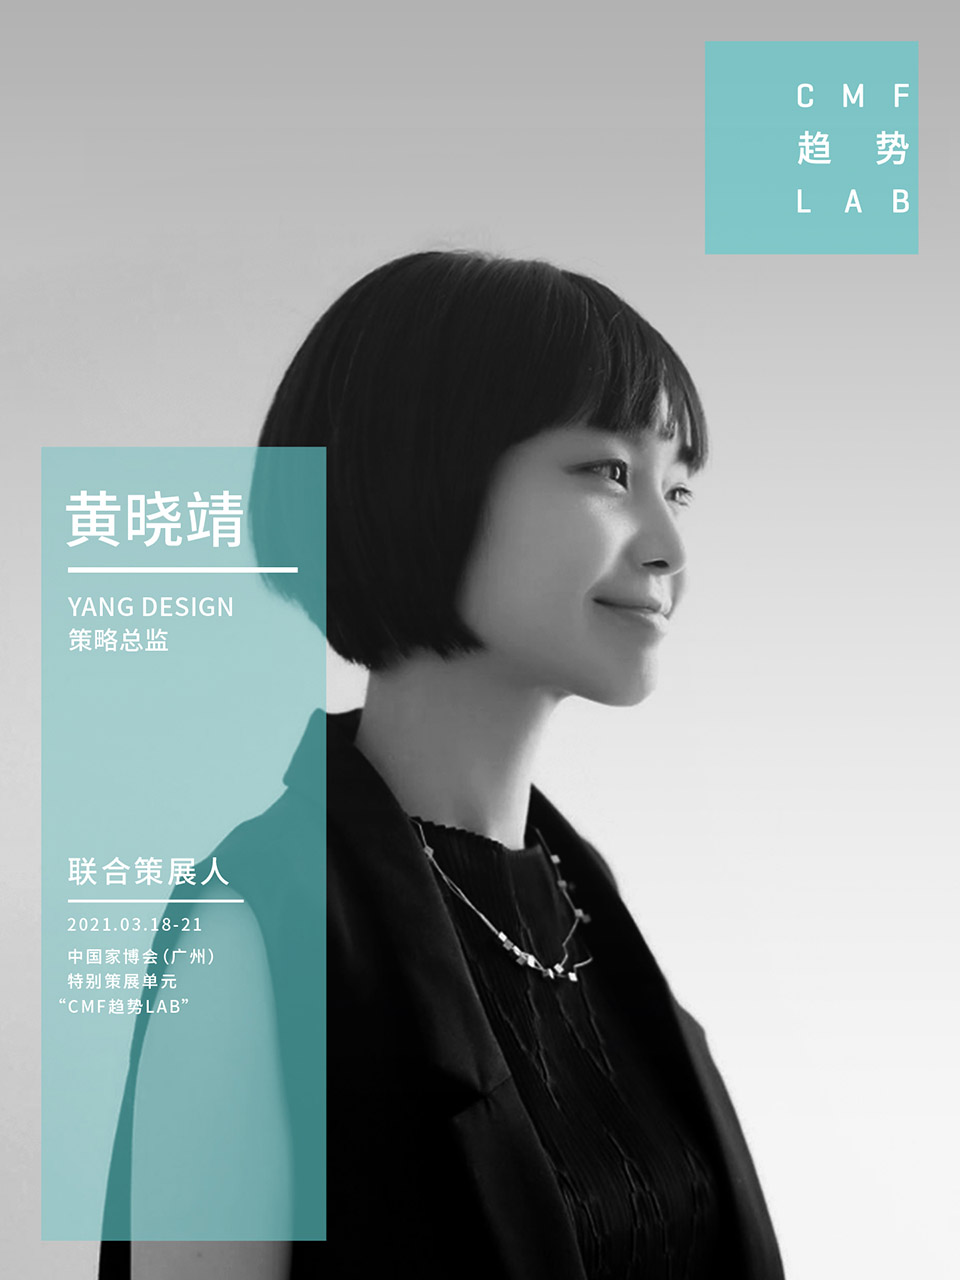 中国家博会“CMF趋势LAB” 四大主题实验室全新发布/“虚拟重构实验室”、“融手艺材料实验室”、“精致懒实验室”、“无废实验室”
-122